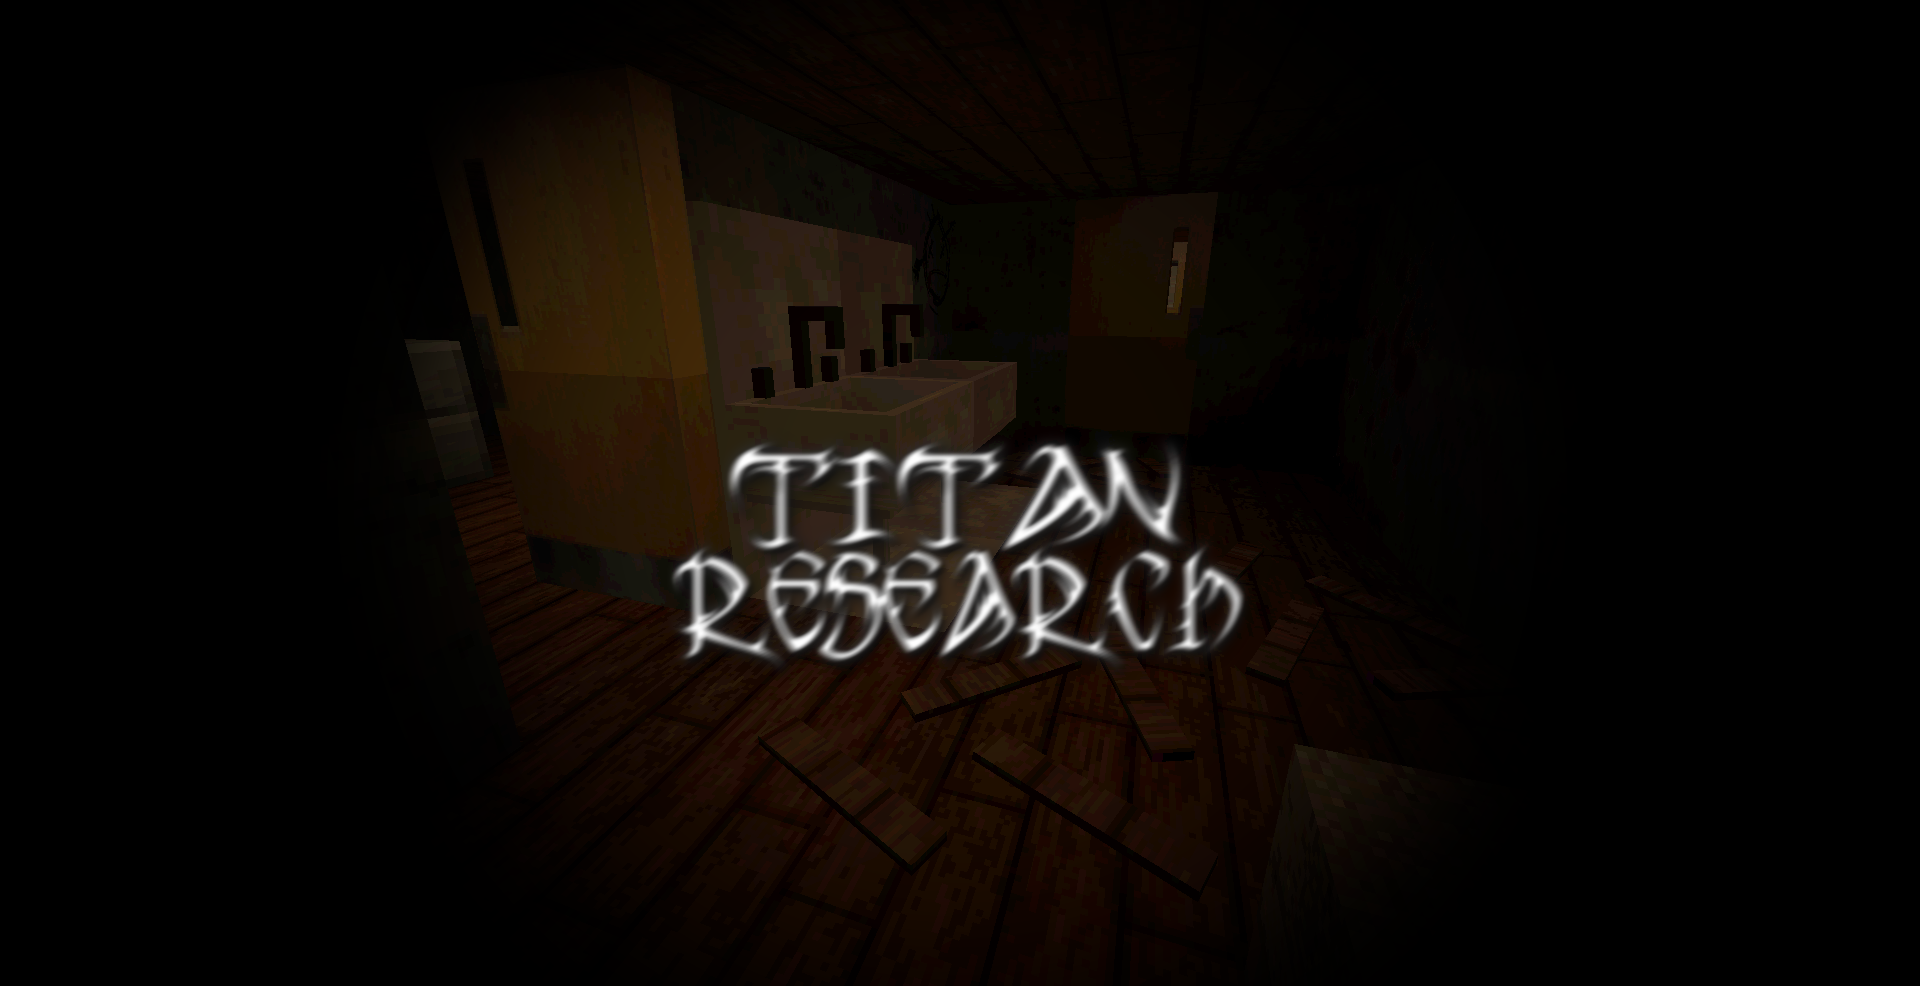 Télécharger Titan Research pour Minecraft 1.14.4